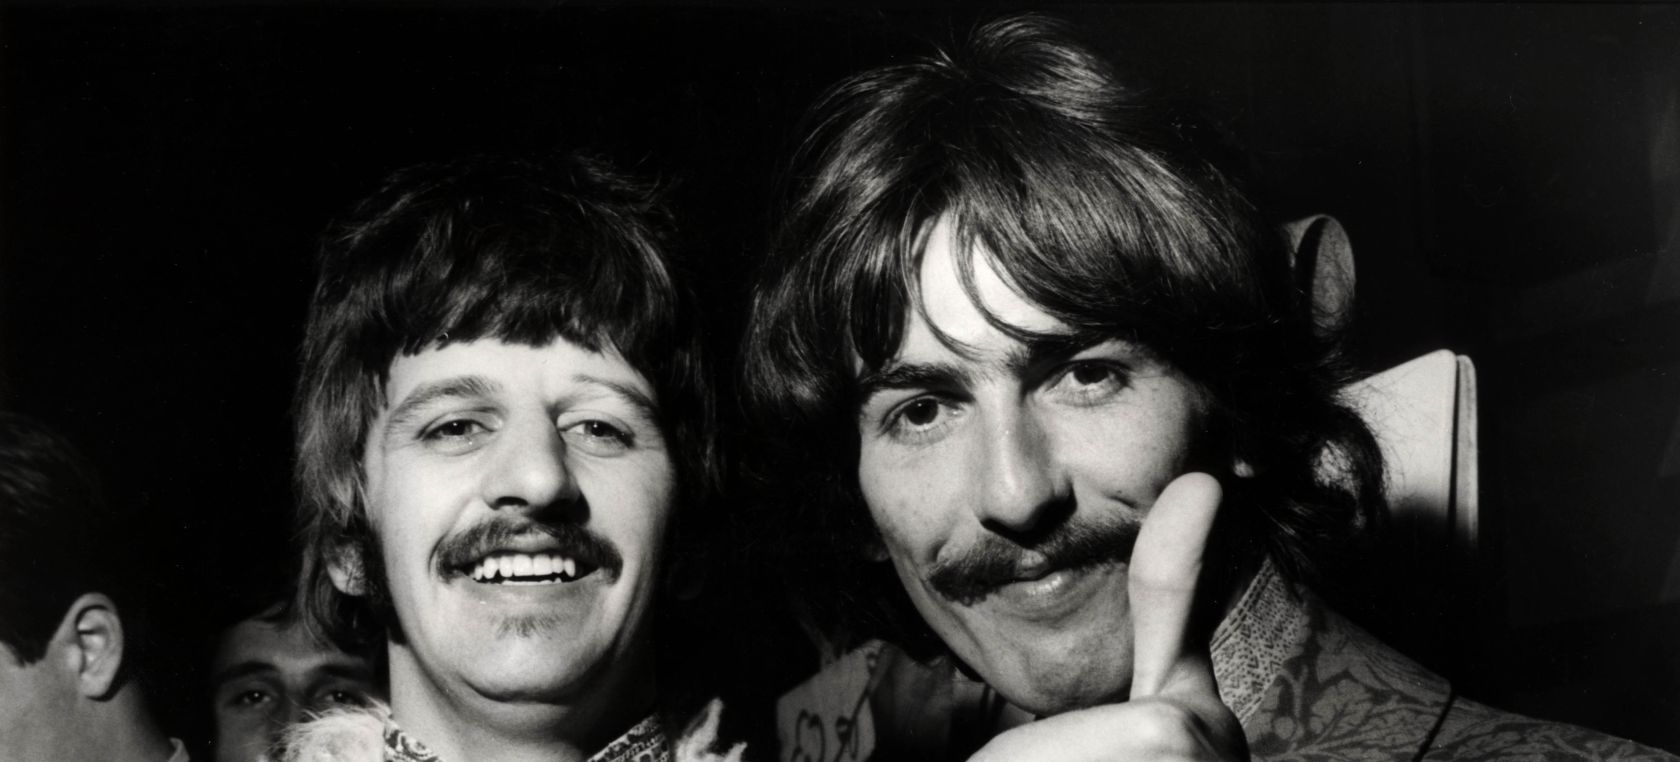 Descubren una canción inédita de George Harrison y Ringo Starr